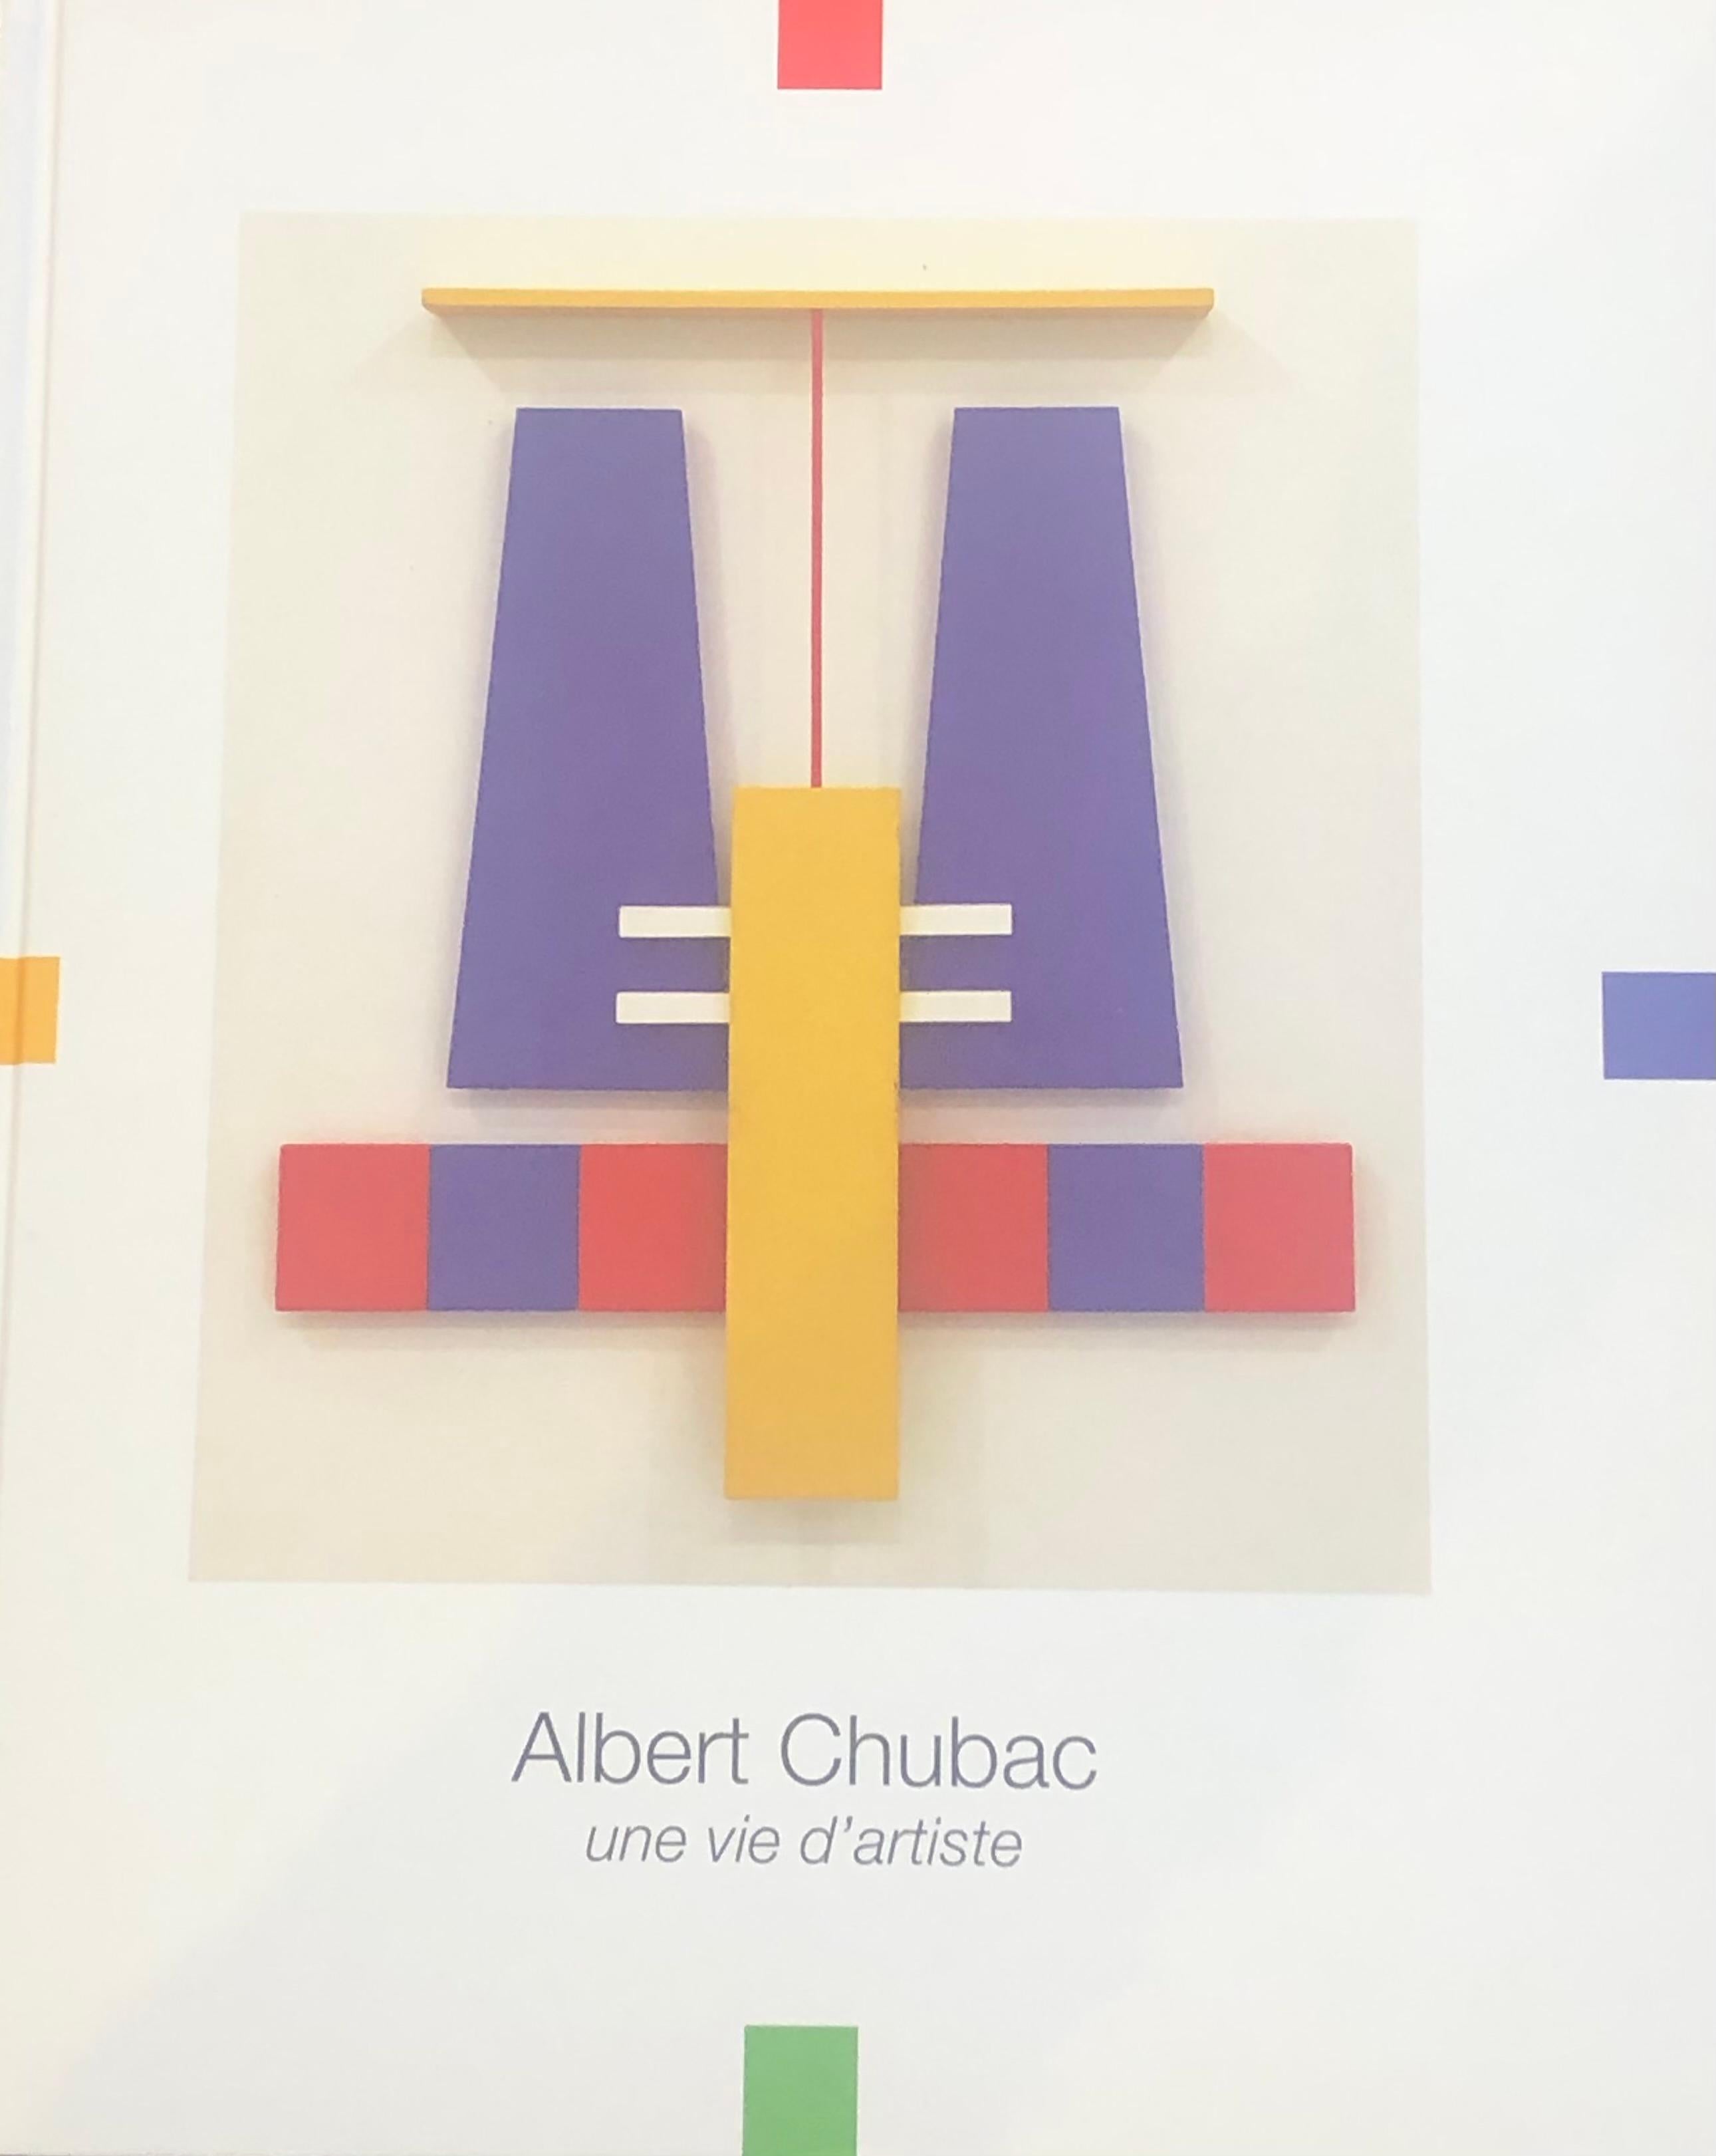 Albert Chubac, Kinetische Skulptur, 